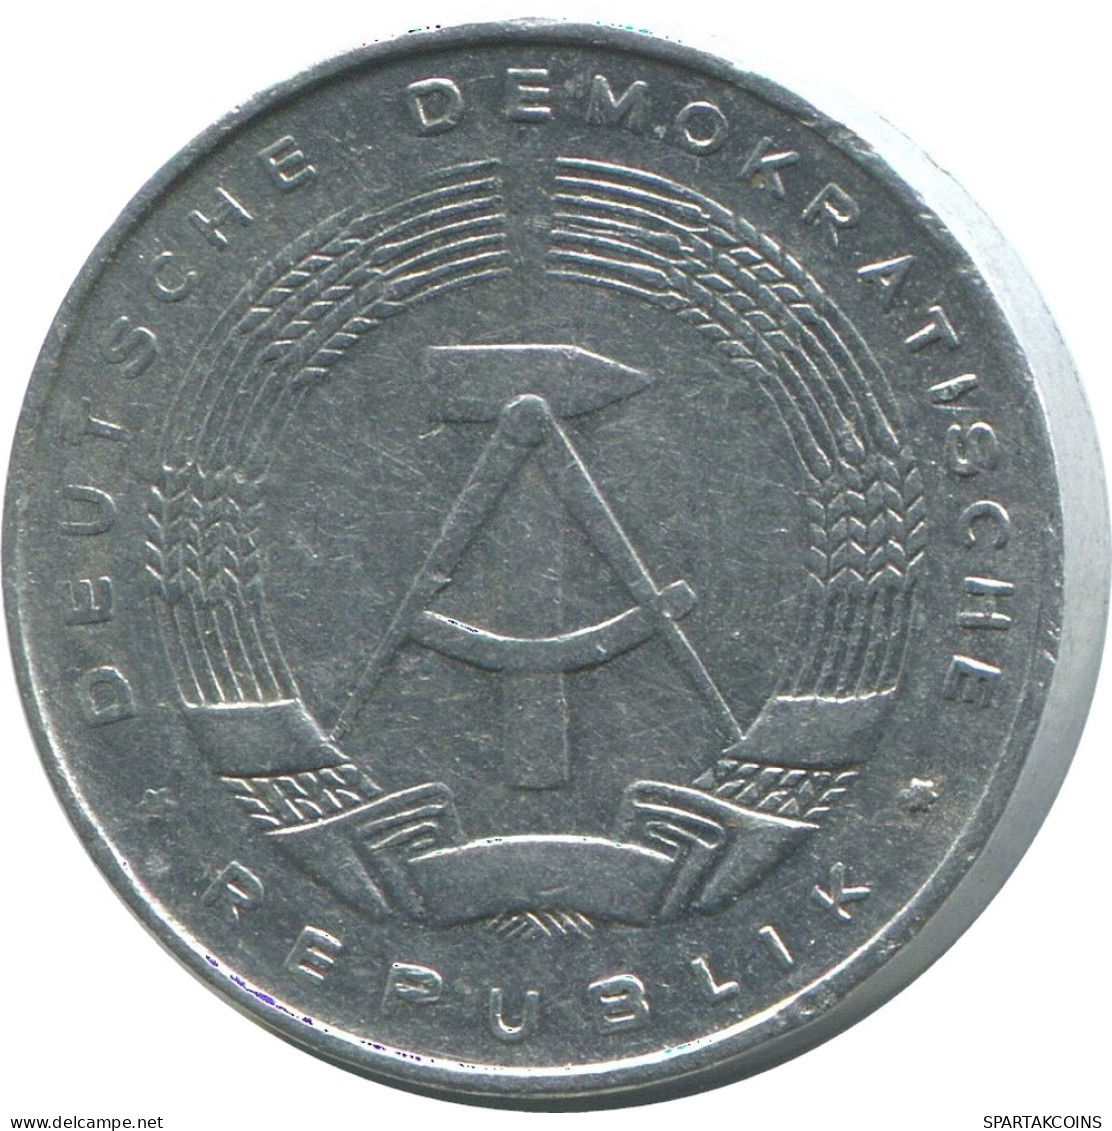 5 PFENNIG 1975 A DDR EAST GERMANY Coin #AE008.U - 5 Pfennig